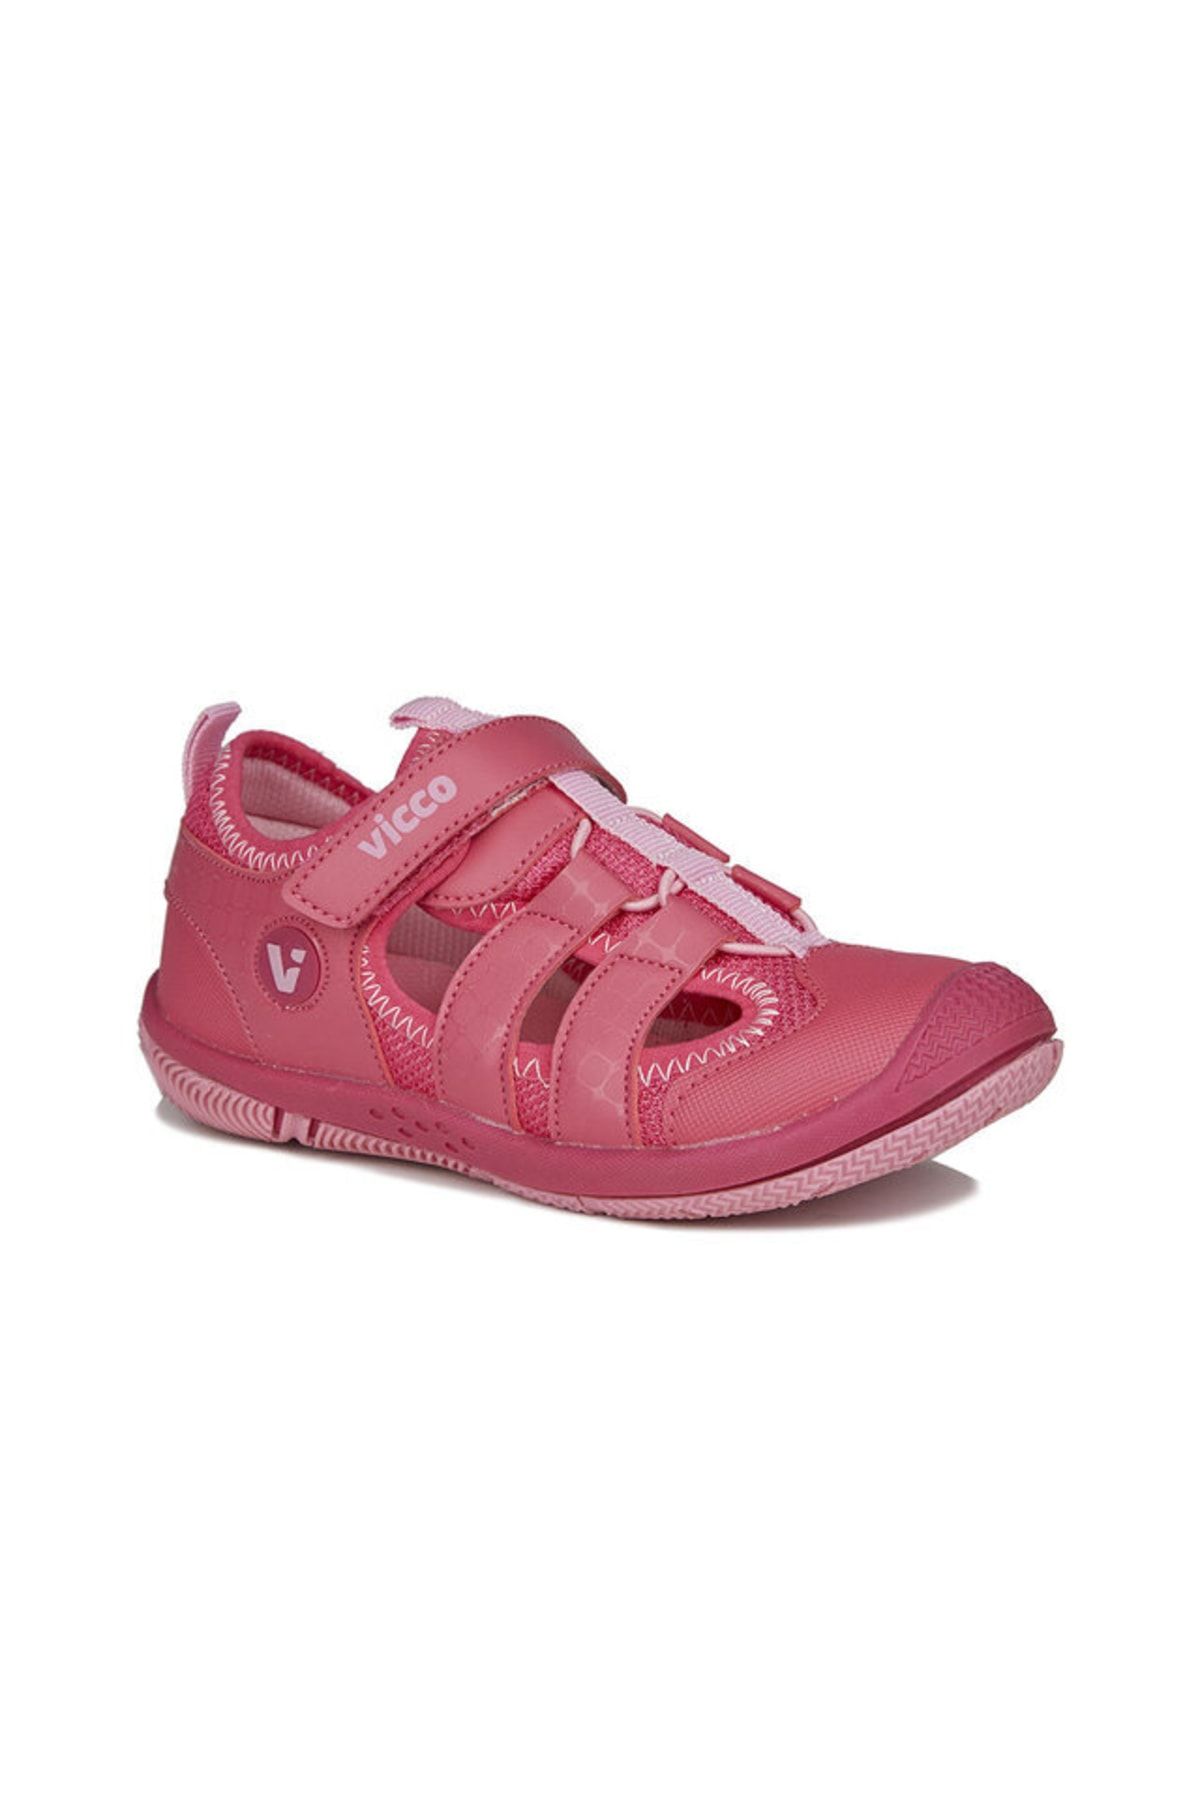 Vicco Sunny Basic Kız Çocuk Fuşya Sandalet Ayakkabı